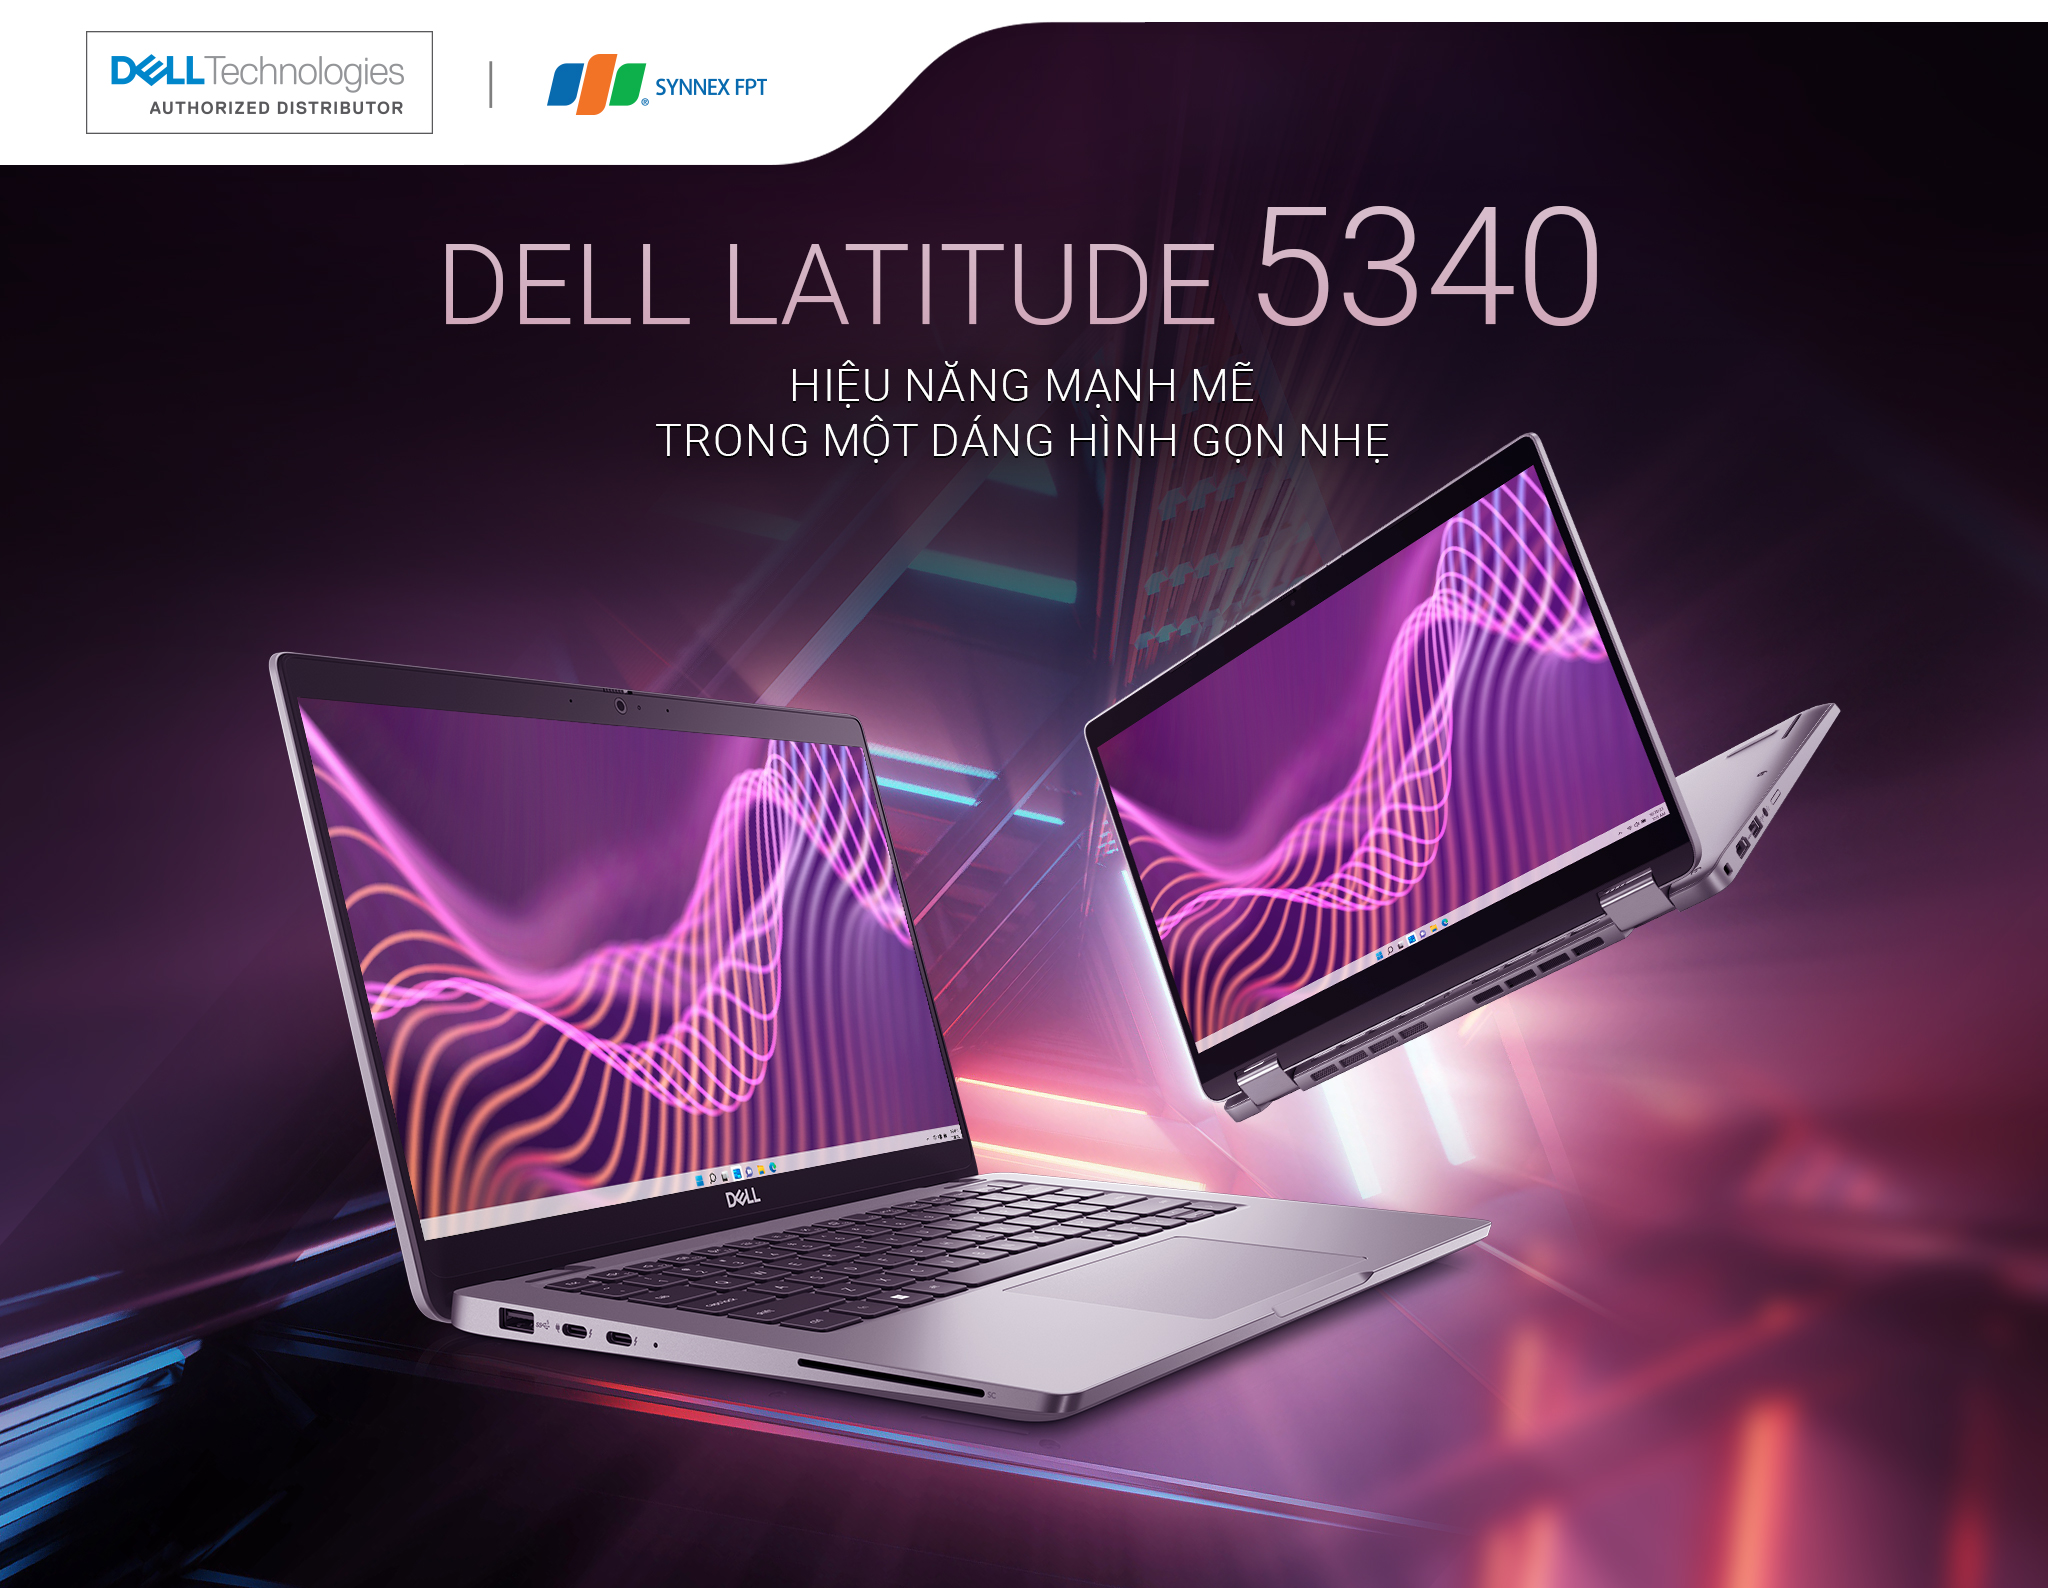 Dell Latitude 5340 - Hiệu năng mạnh mẽ trong một dáng hình gọn nhẹ